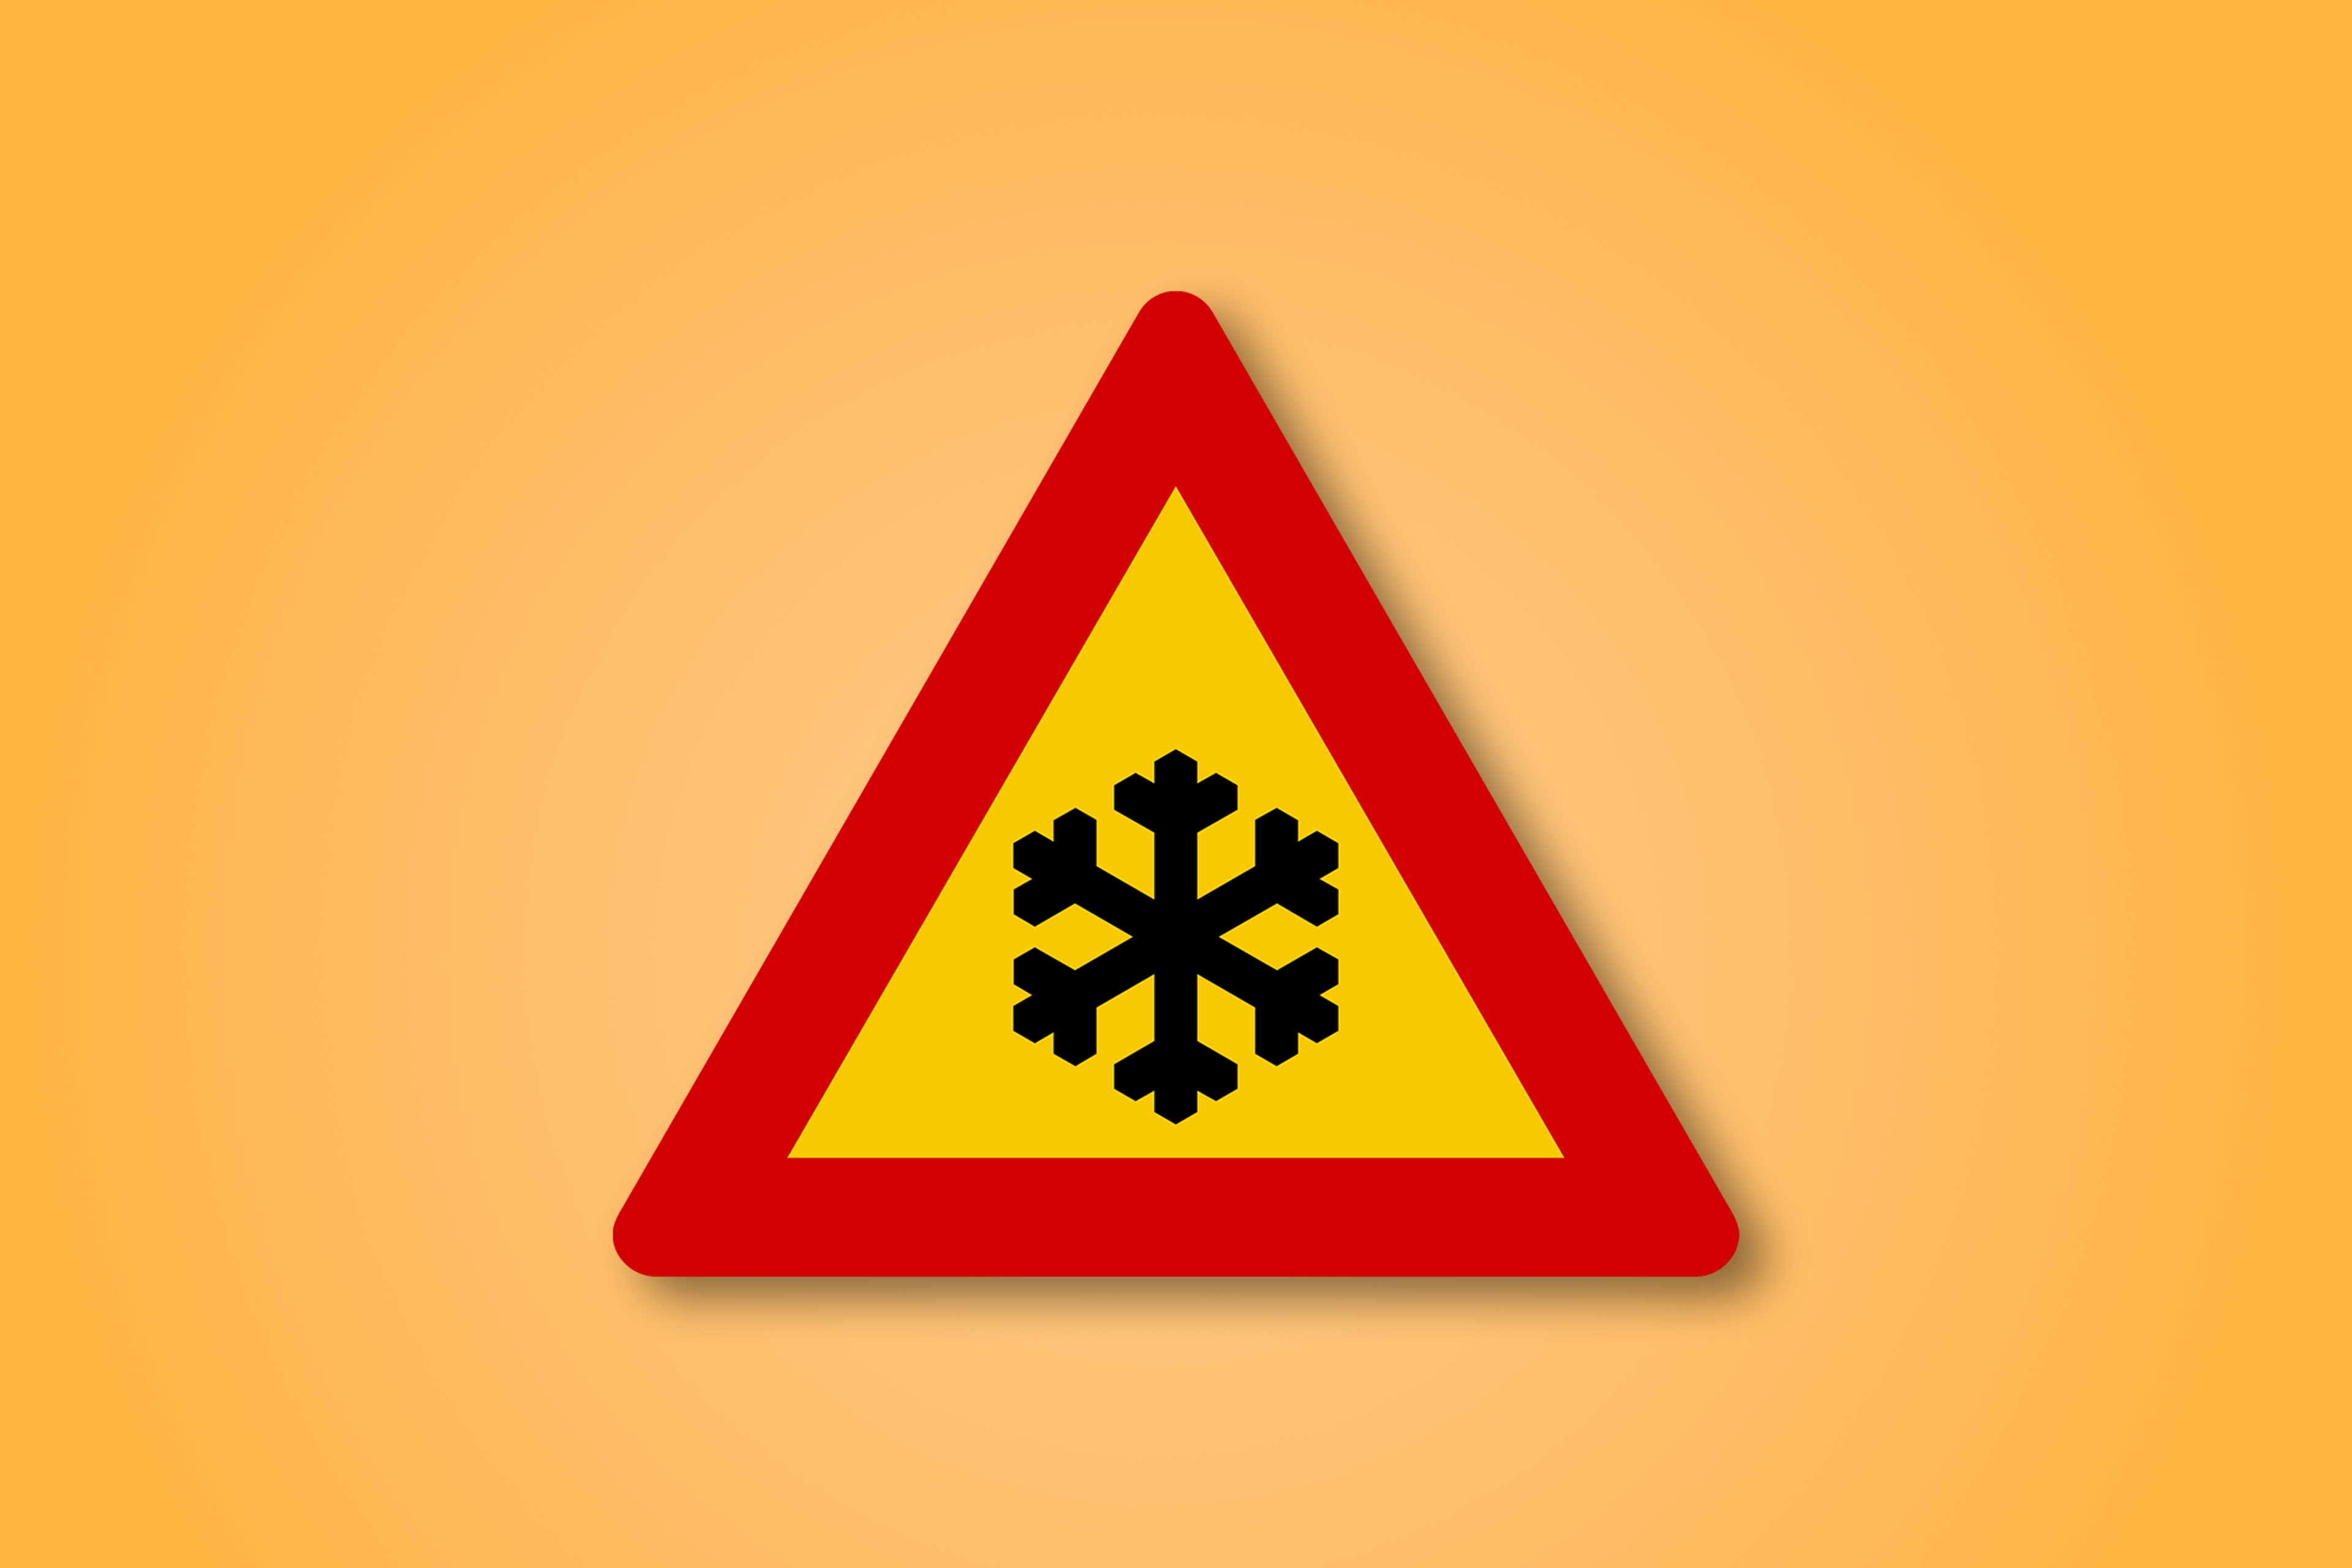 一块红色和黄色的三角形路标，中间有一个雪花。这个路标表示道路结冰。